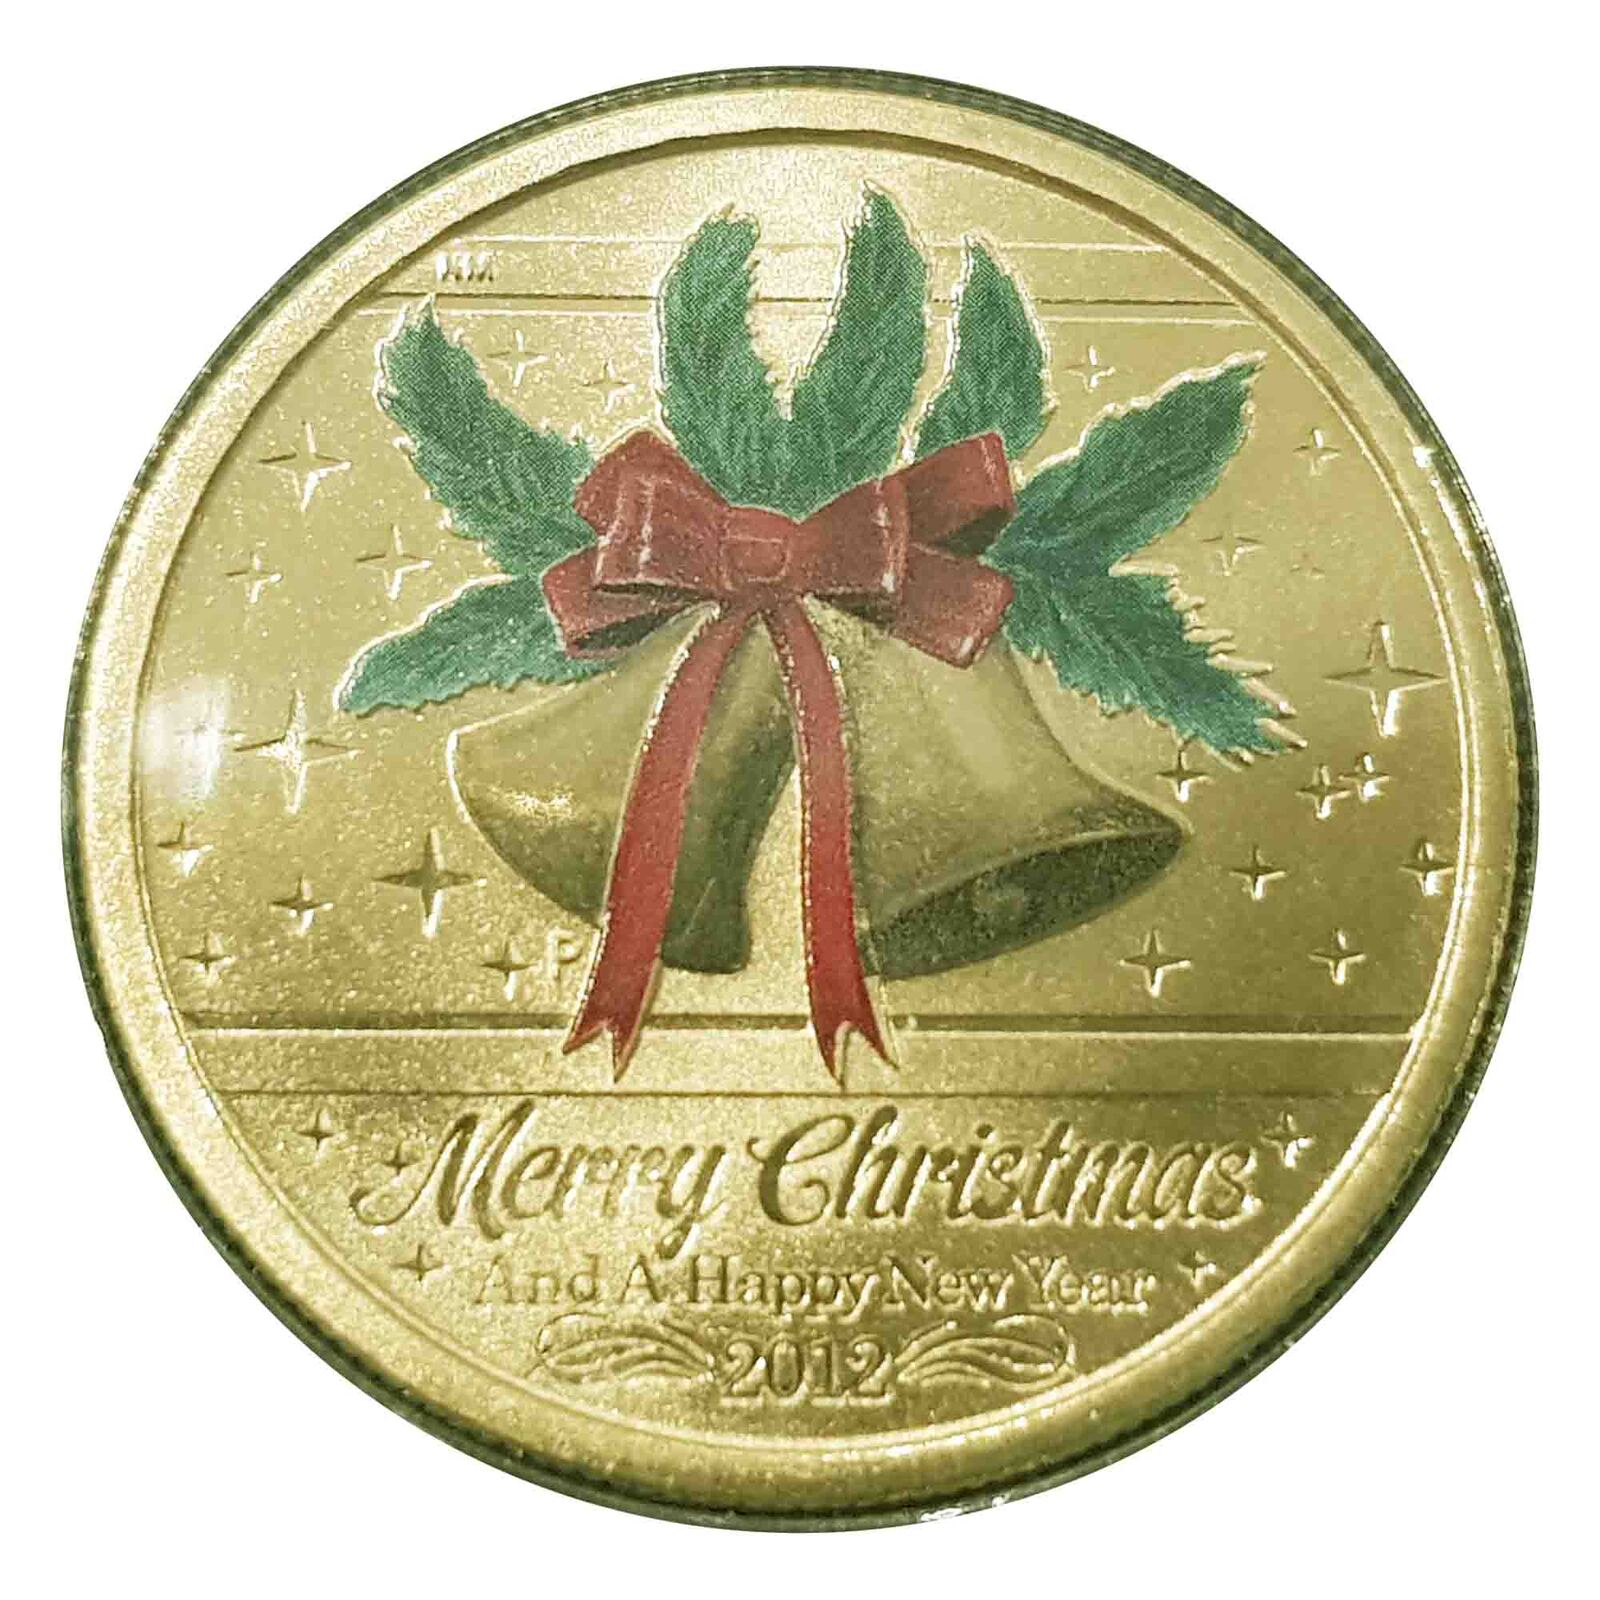 Merry Christmas 2015 Australia PNC $1 UNC Coin 